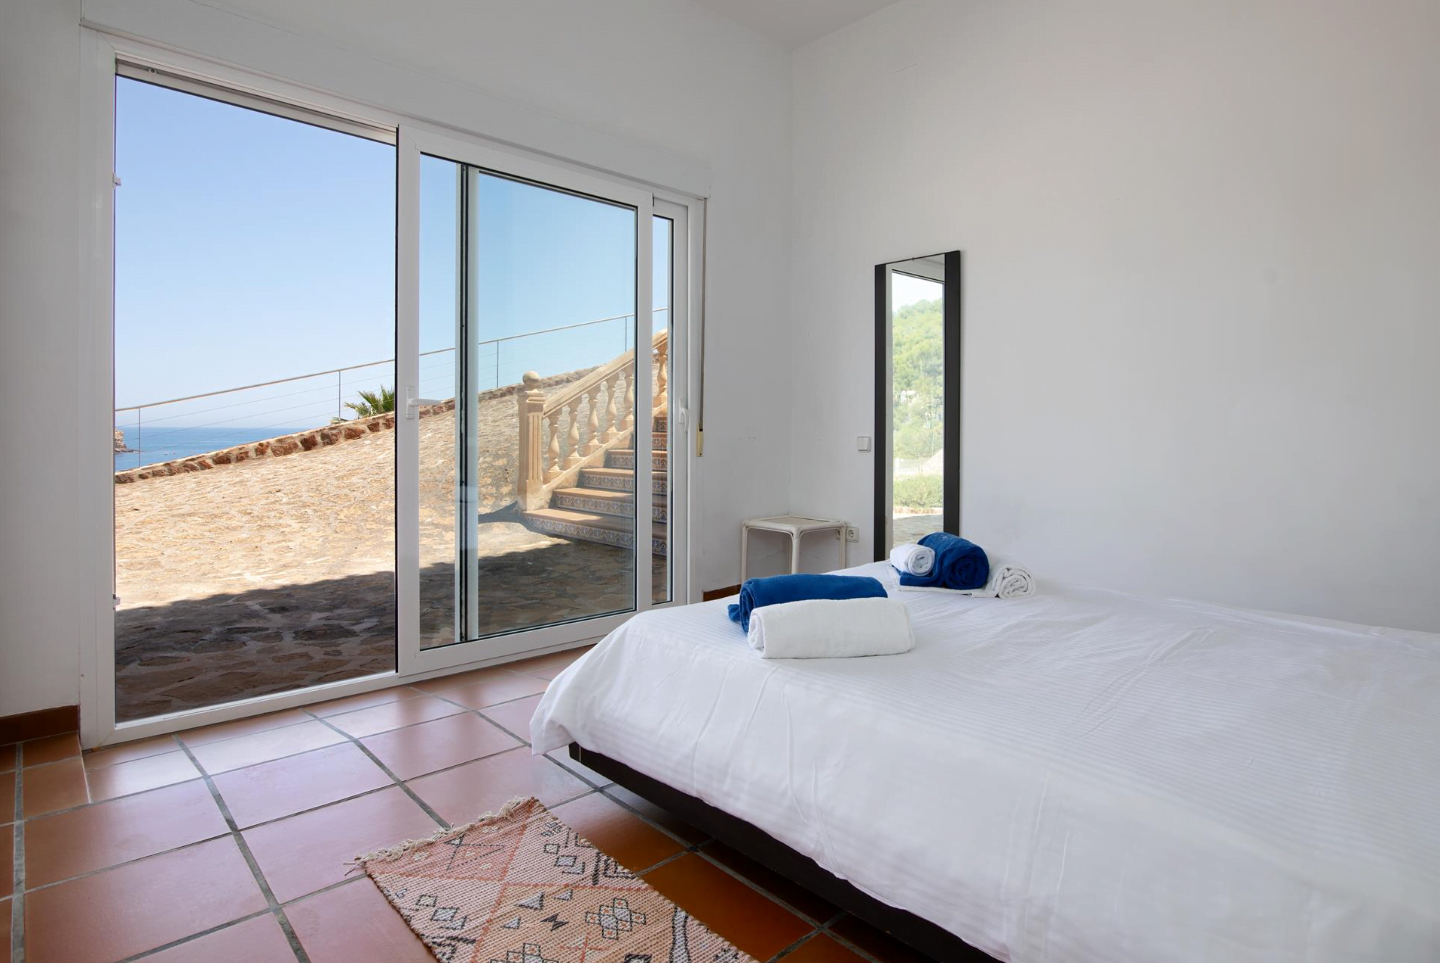 Dormitorio con acceso al exterior y vistas al mar